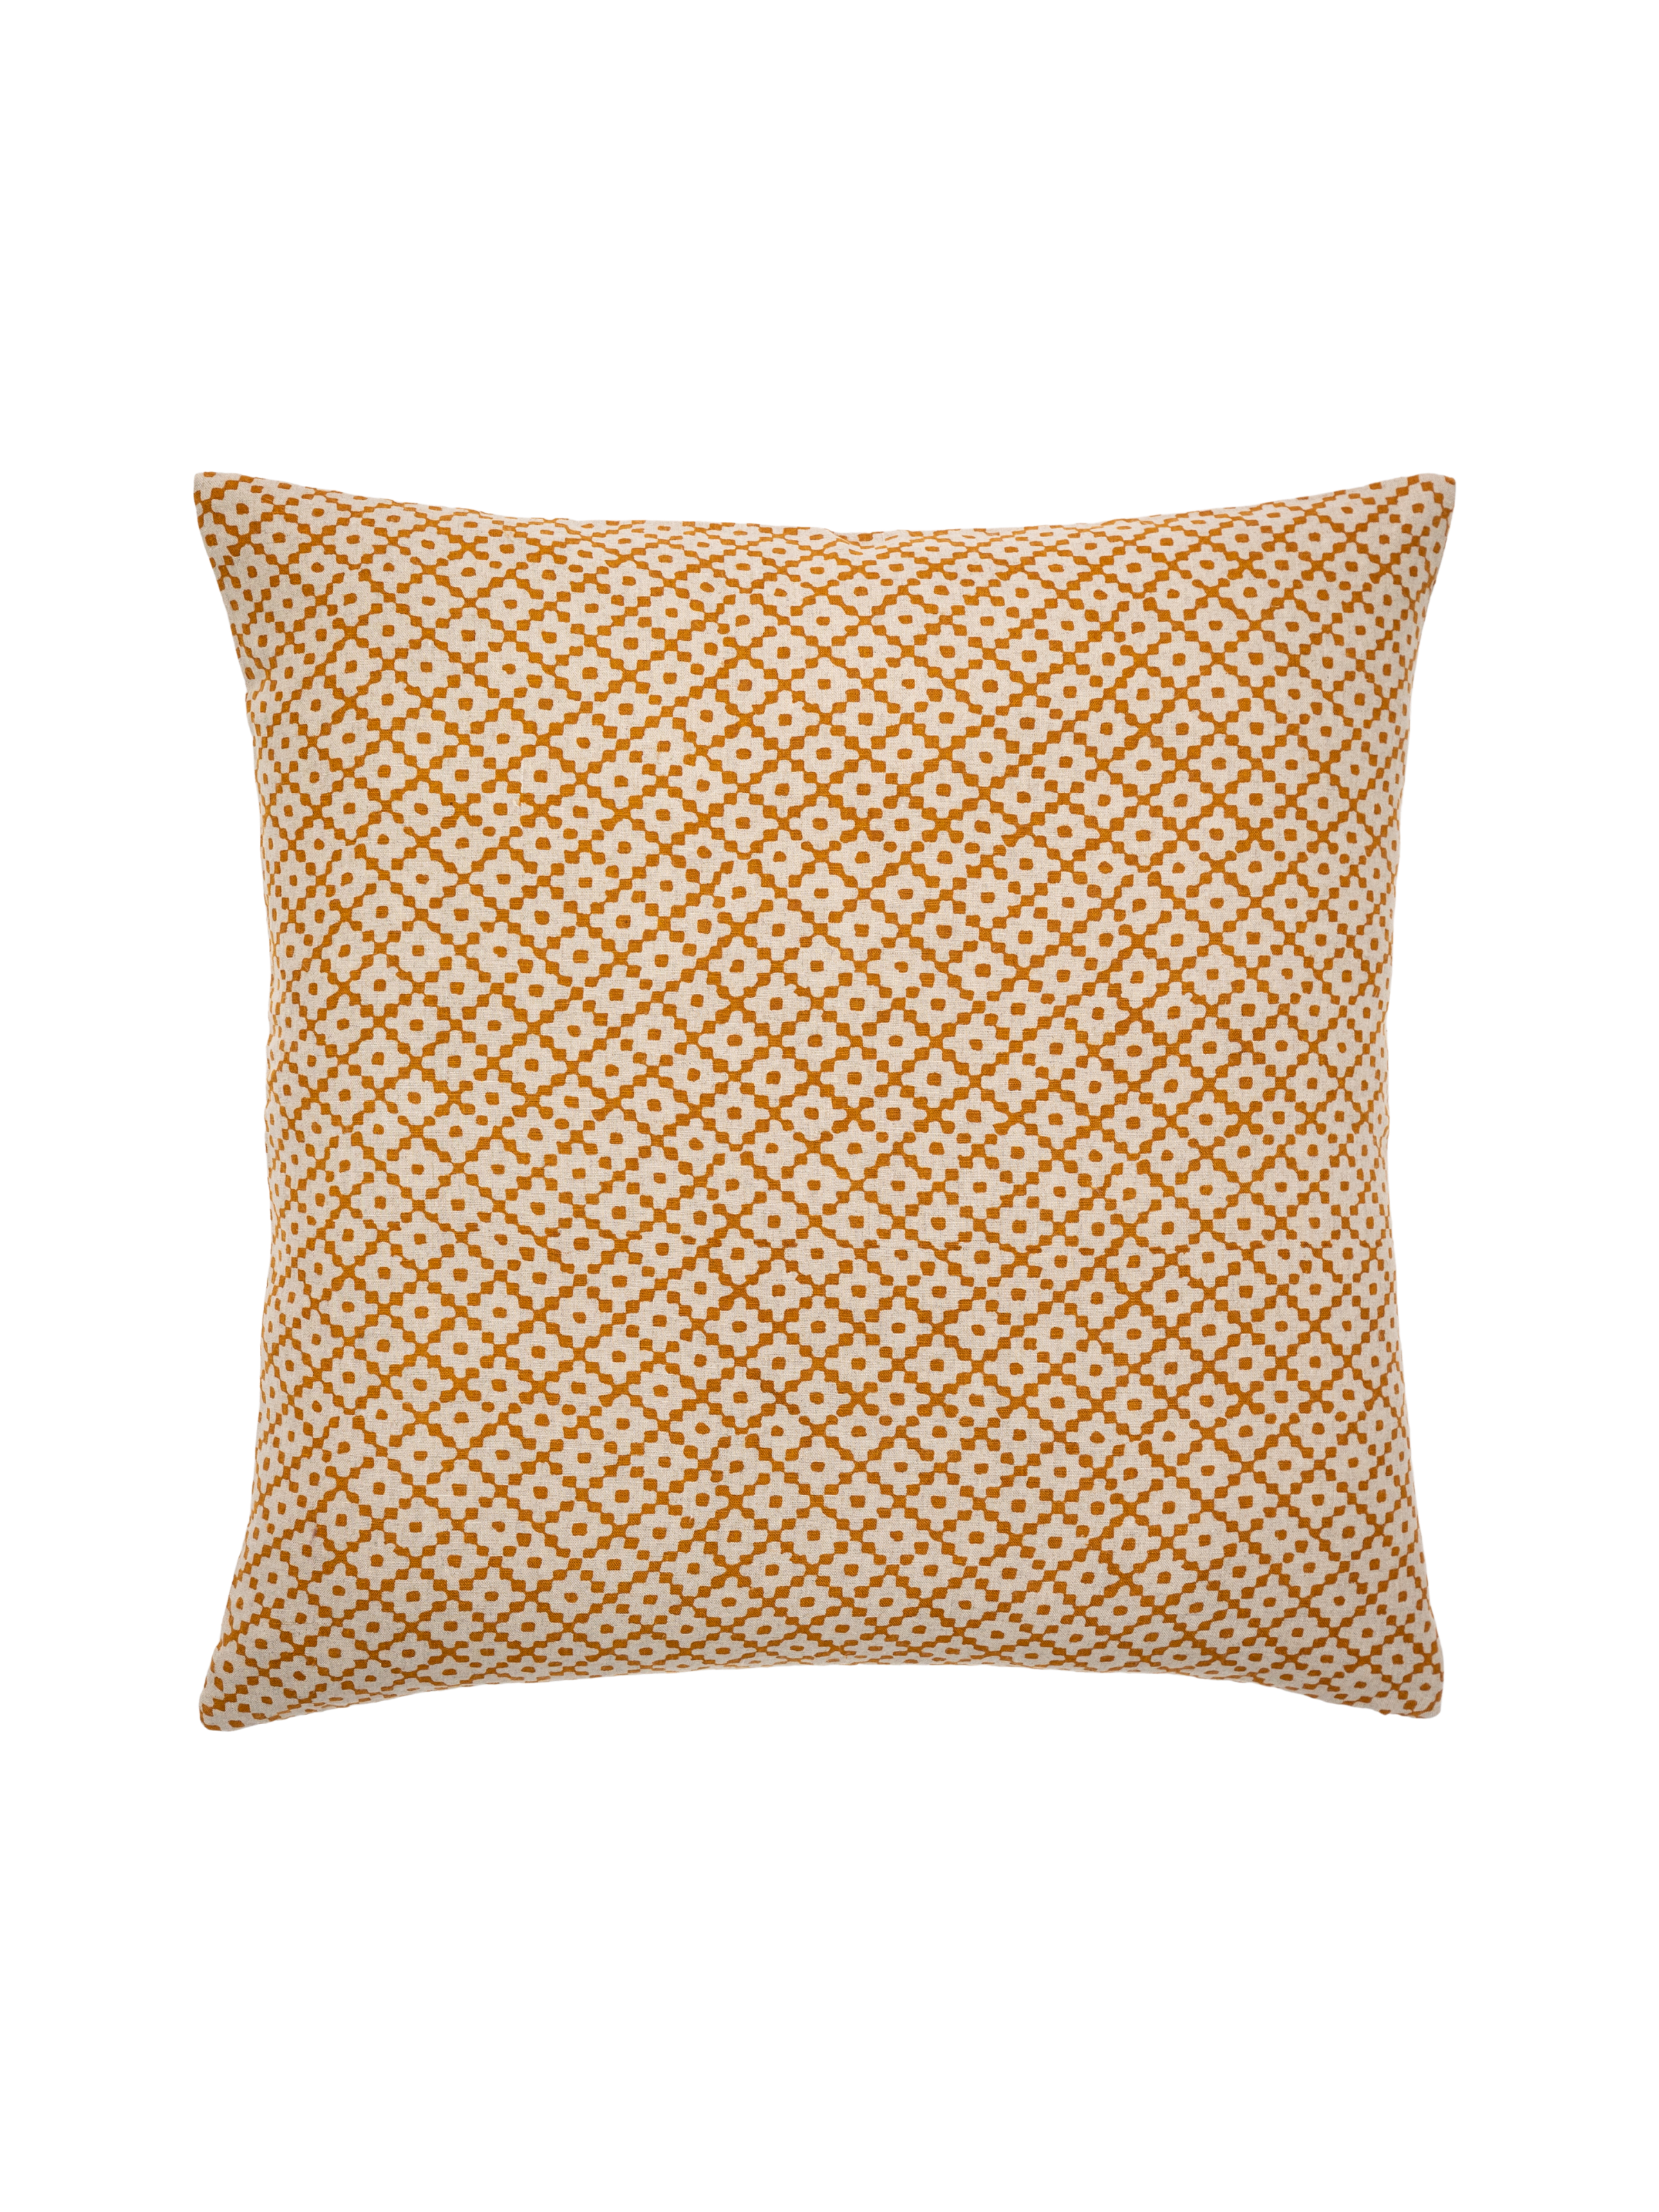 Kenya Ochre Decorative Pillow Cover